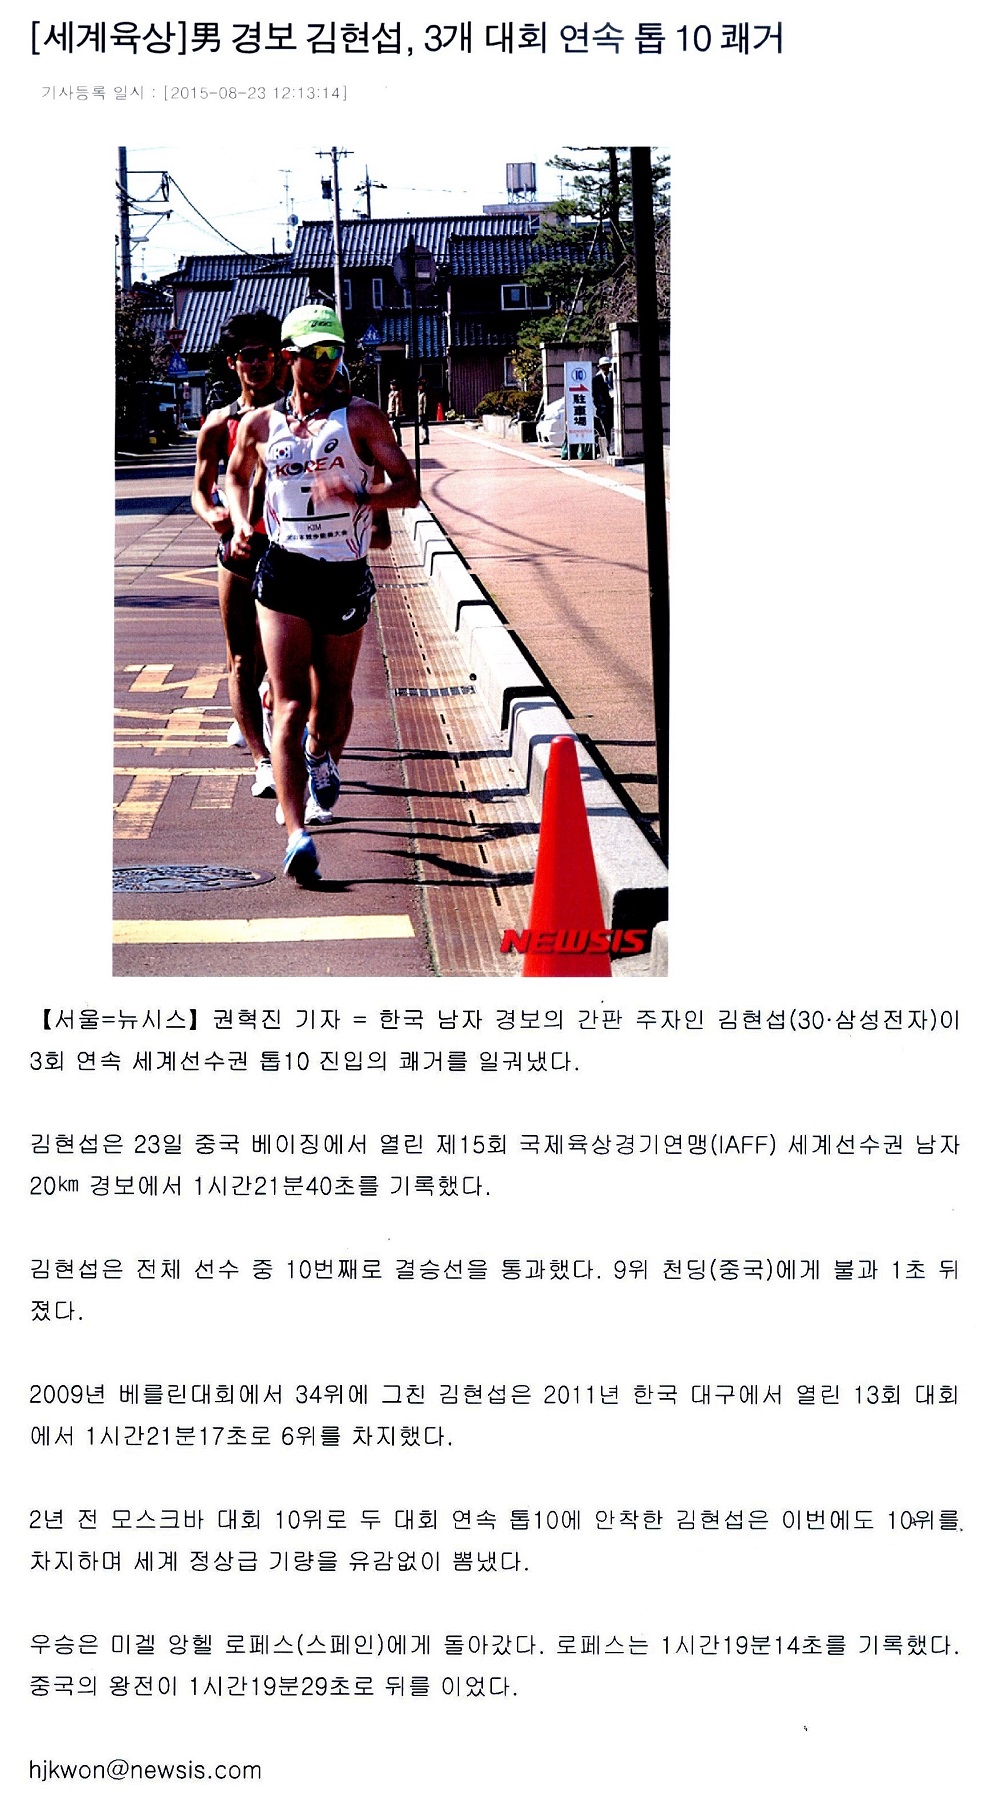 [세계육상] 男경보 김현섭, 3개 대회연속 톱10 쾌거